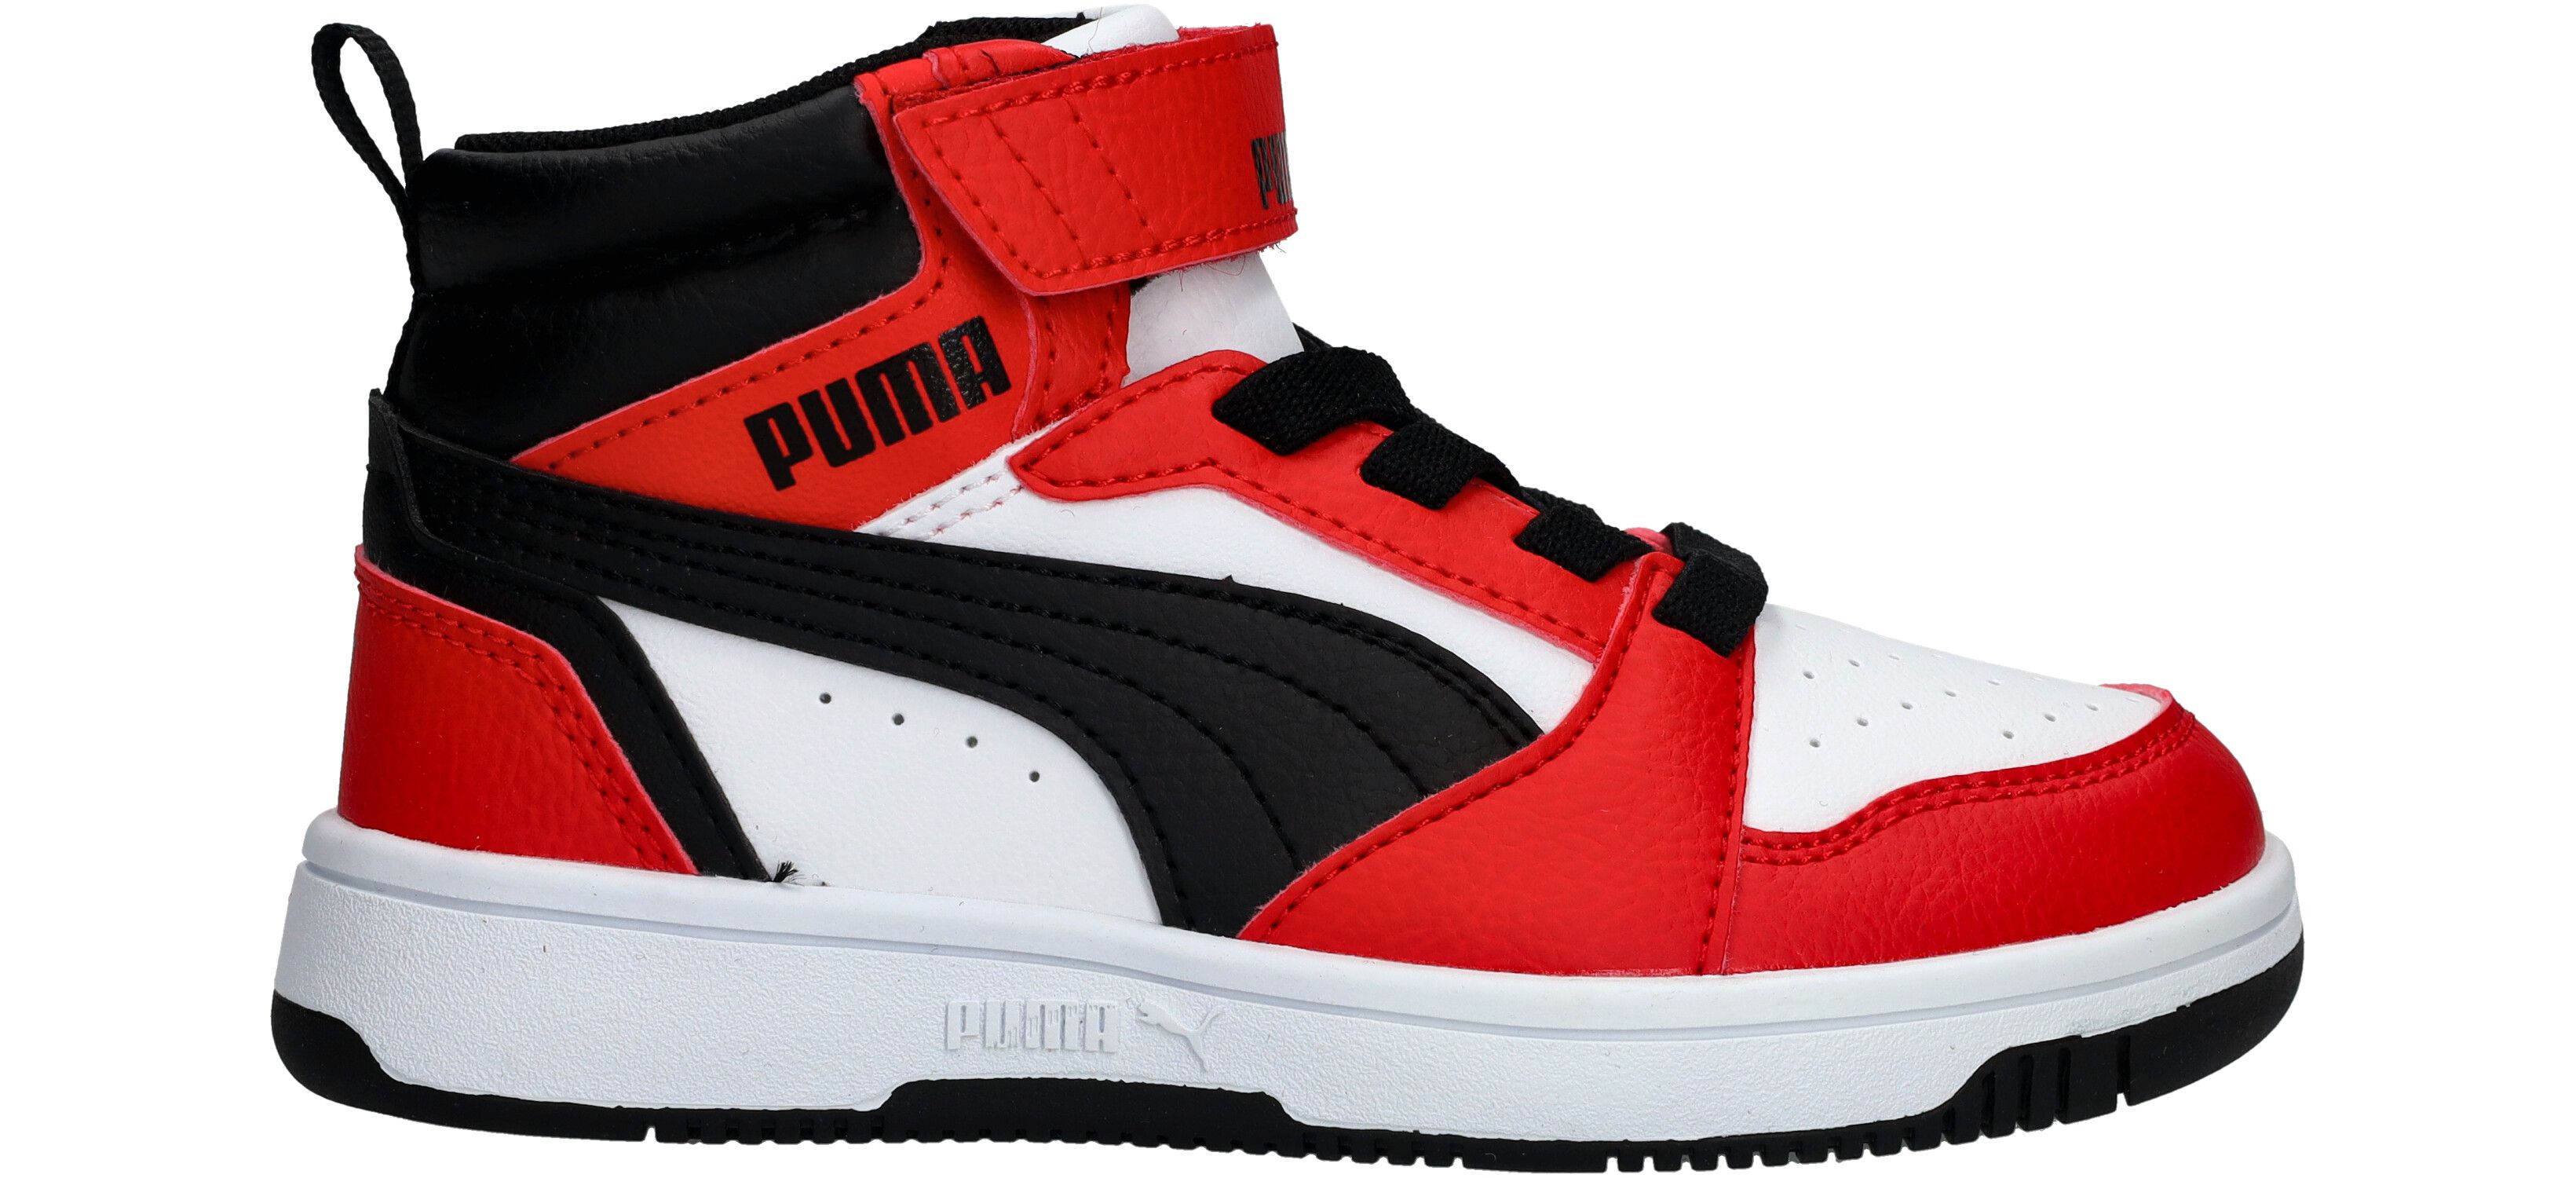 Puma Rebound V6 Mid jongens sneakers rood/zwart - Maat 34 - Uitneembare zool